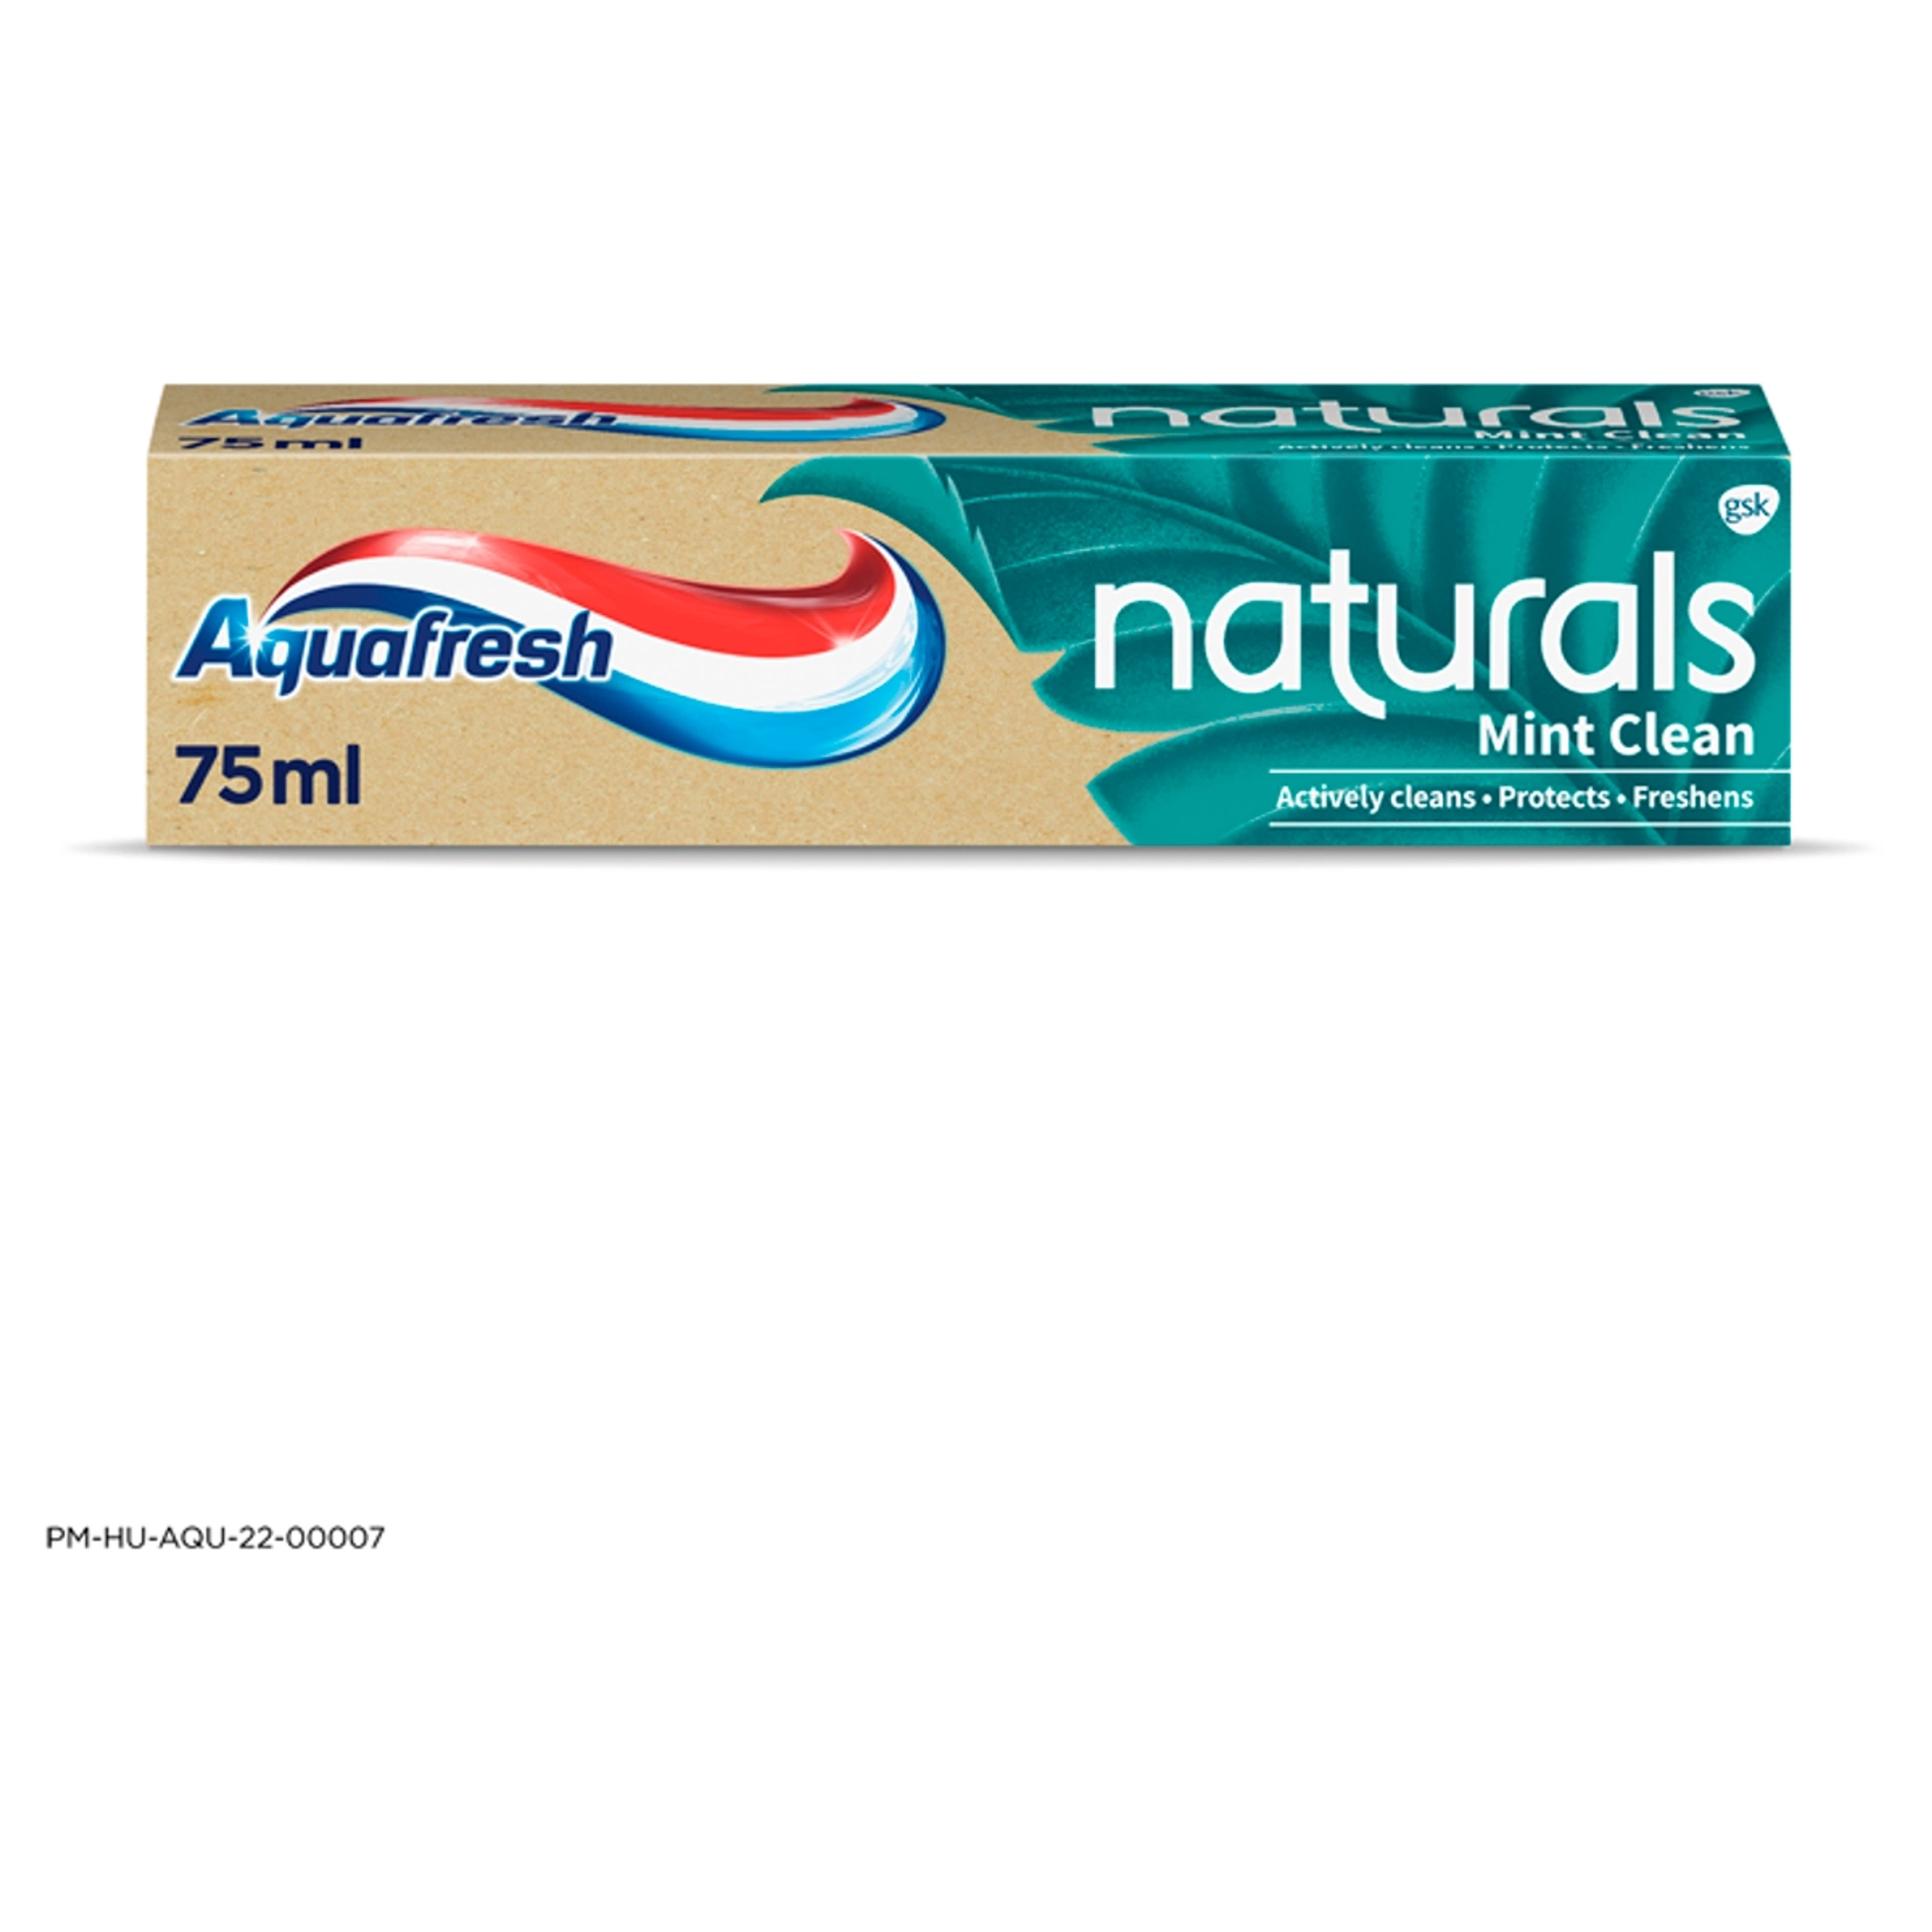 Aquafresh Naturals Mint Clean fogkrém - 75 ml-1